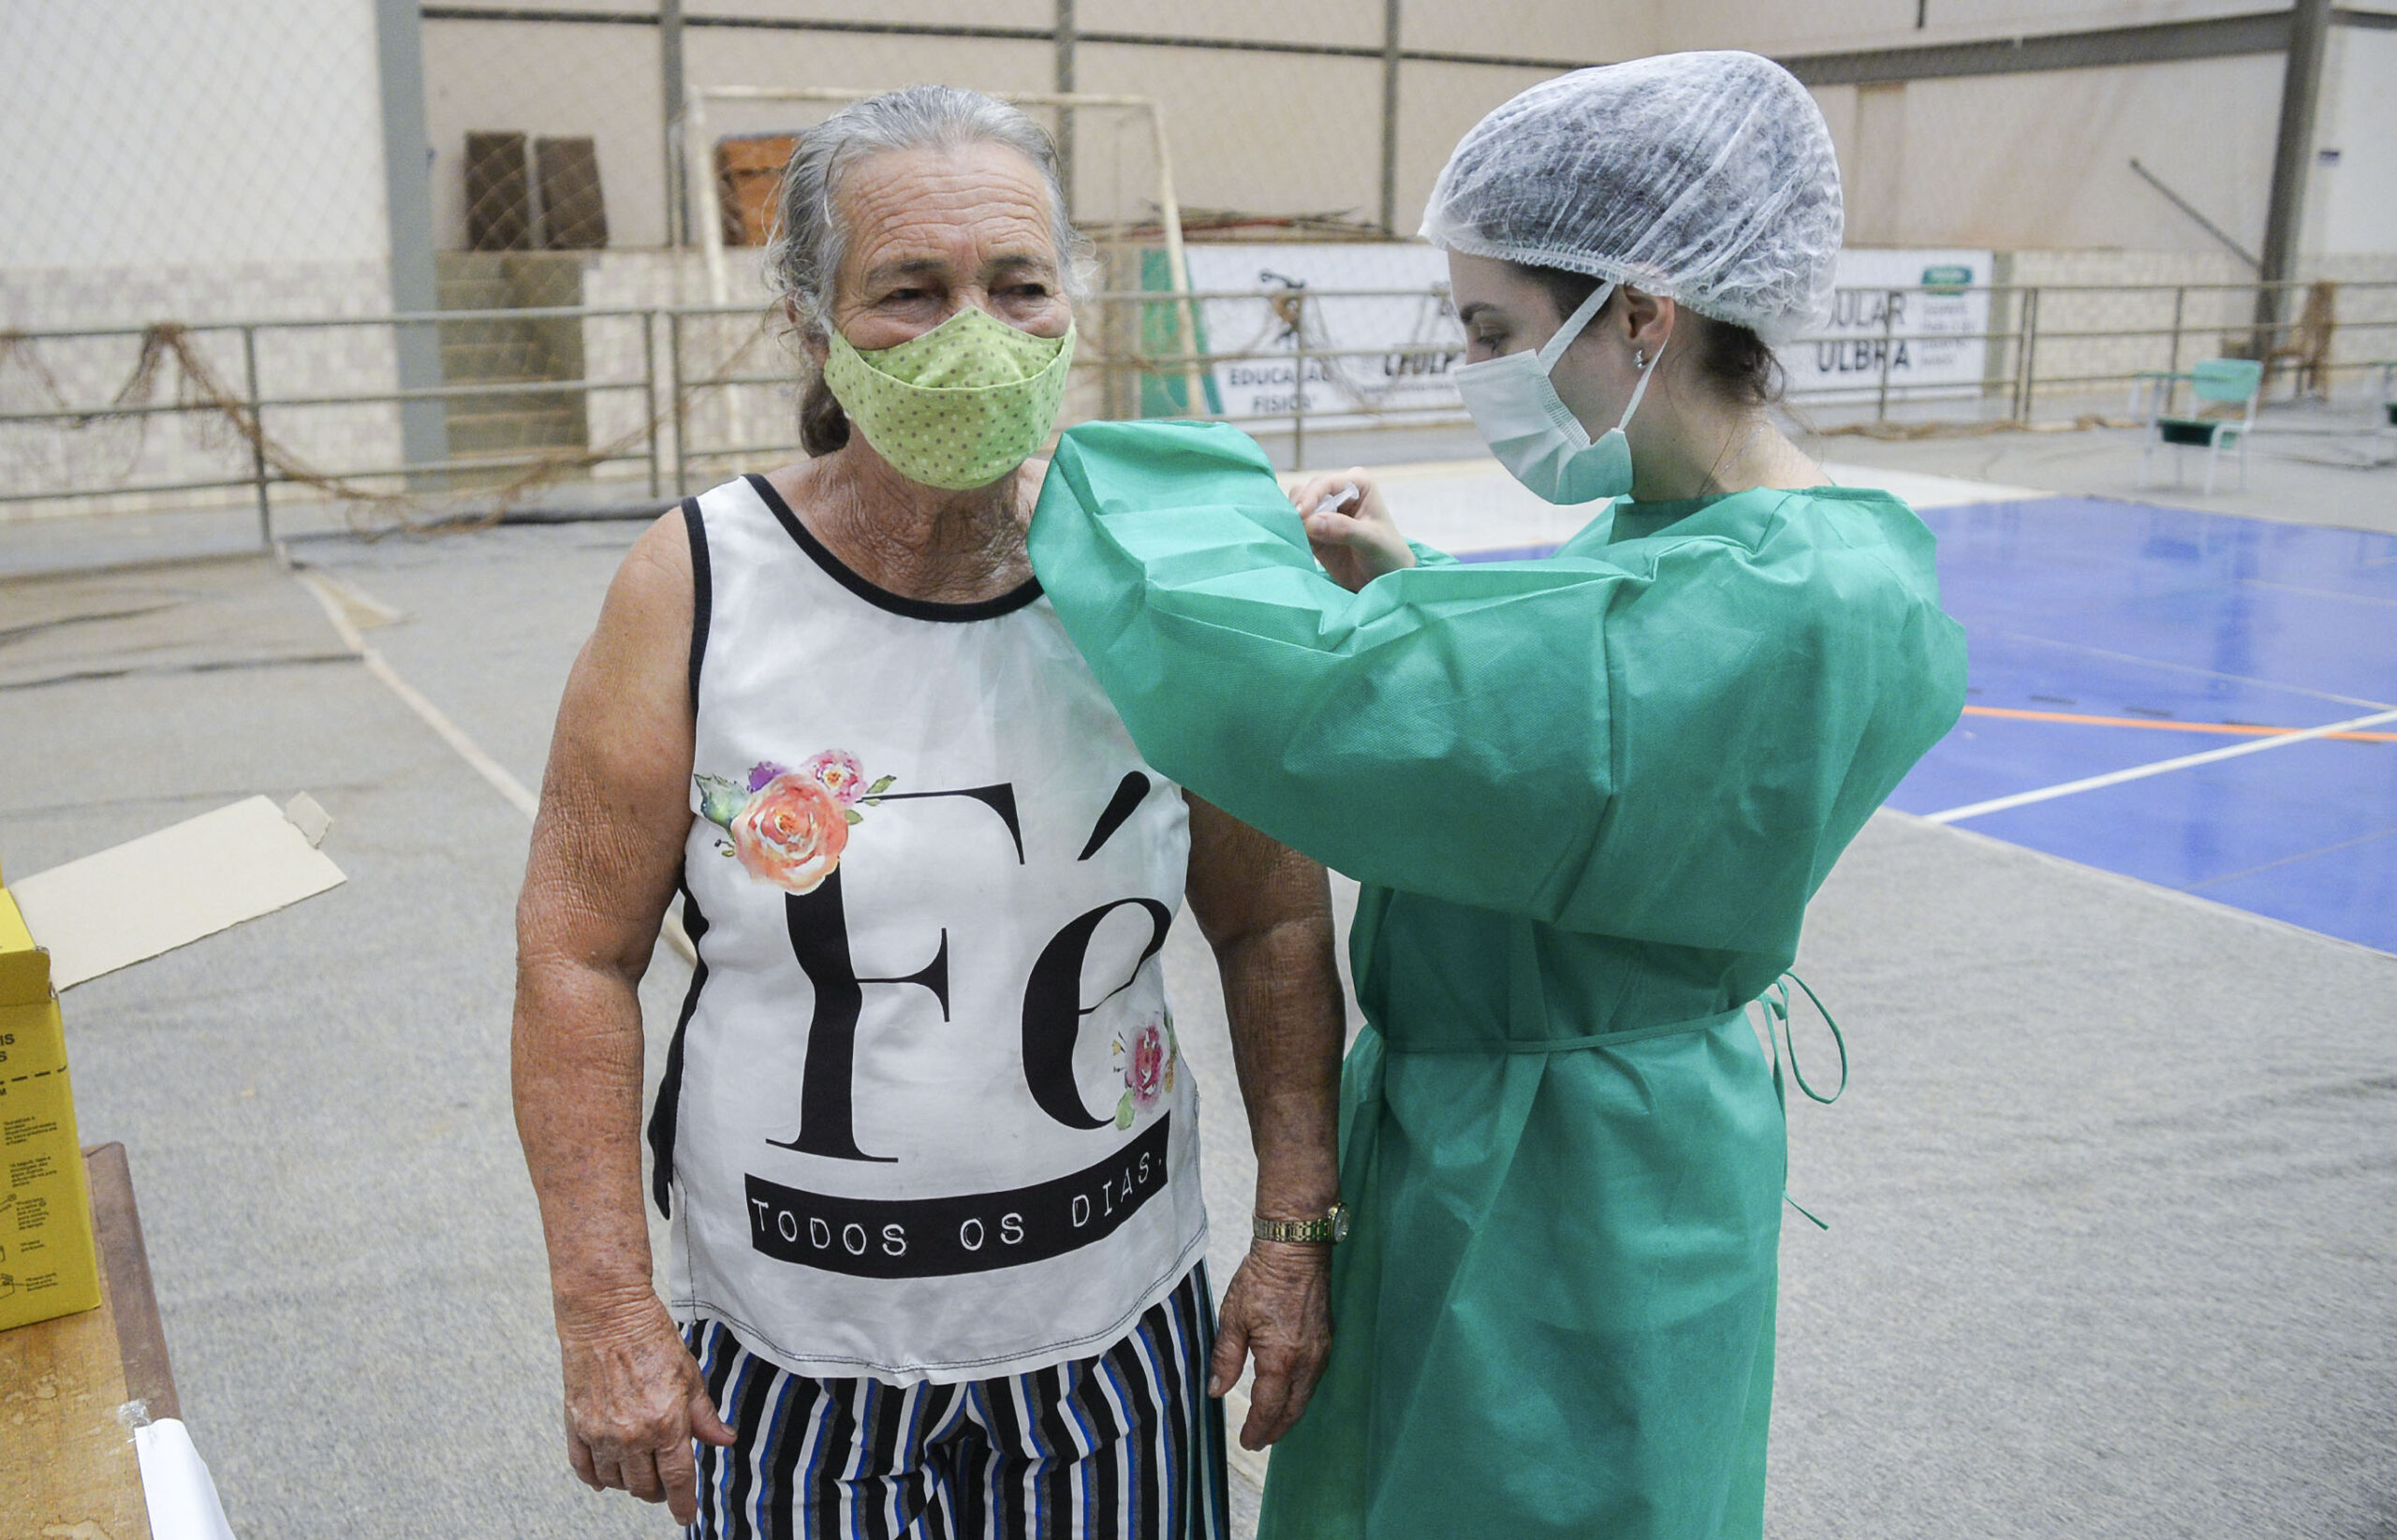 Idosos com mais 64 anos podem se vacinar a partir desta quinta, 29, em Palmas